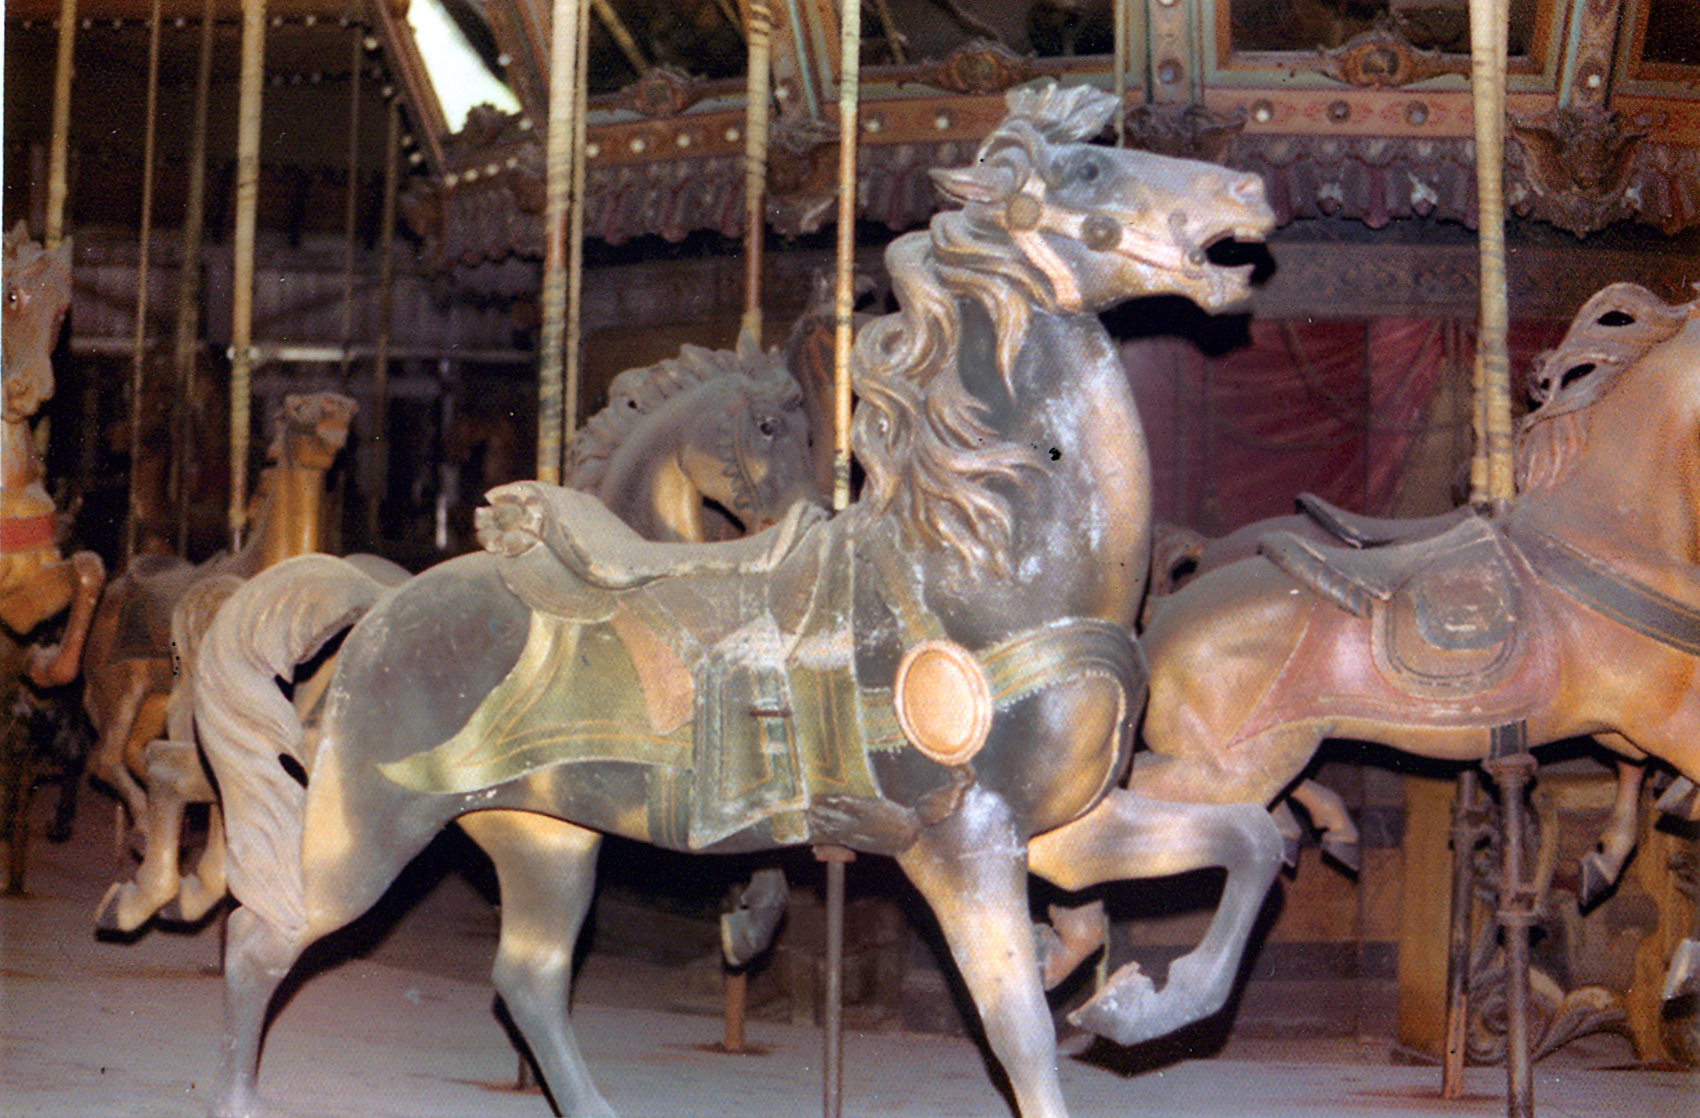 1927-Rock-Springs-WV-D-C-Muller-carousel-horse-Tuttle-photo